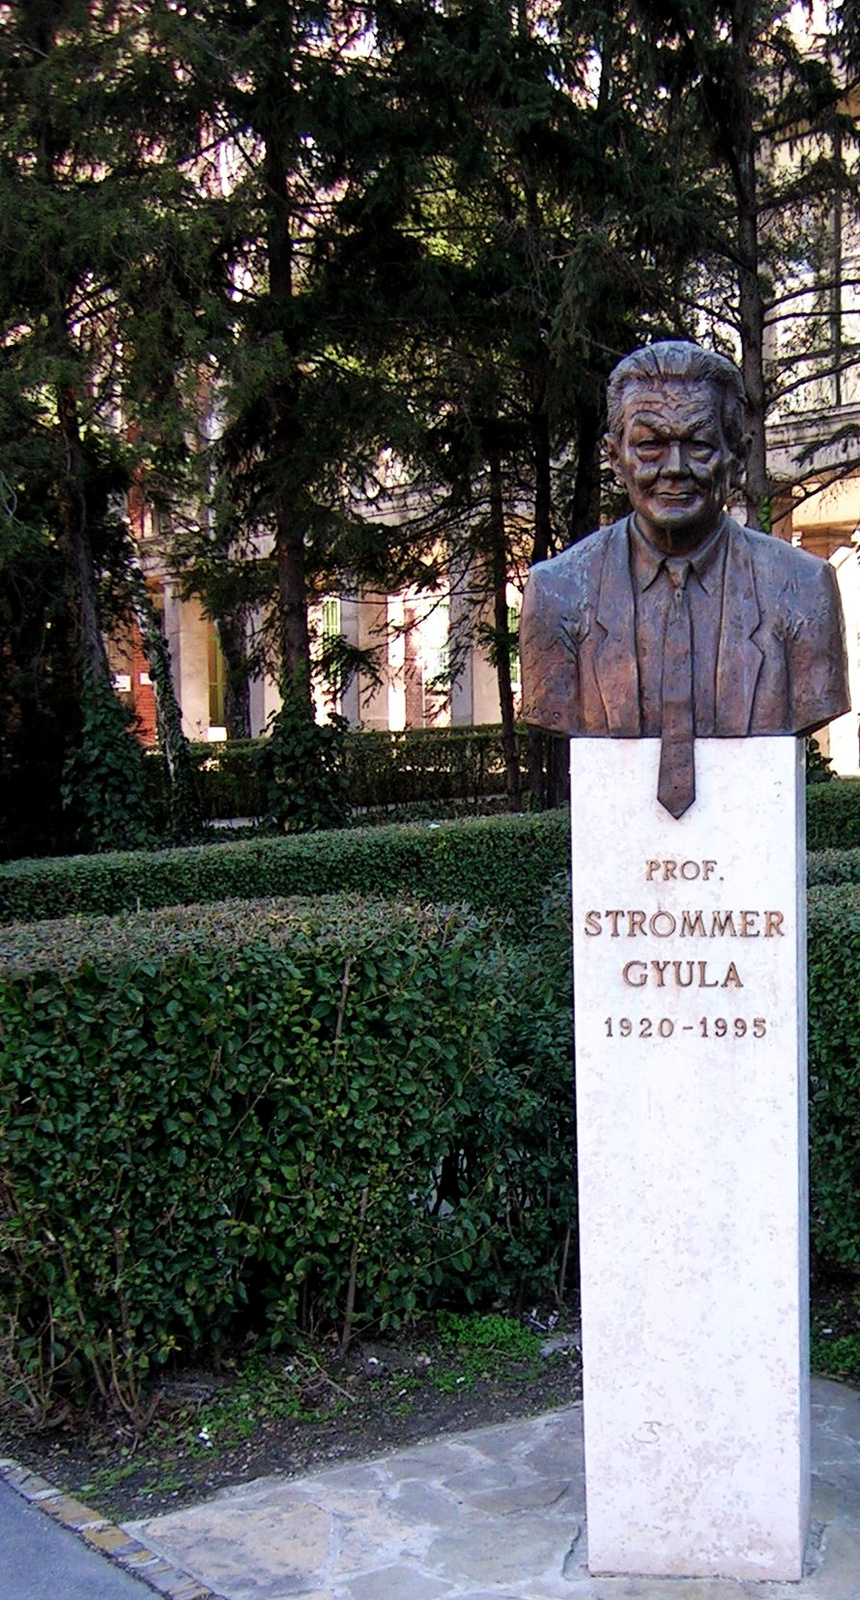 Prof. Strommer Gyula